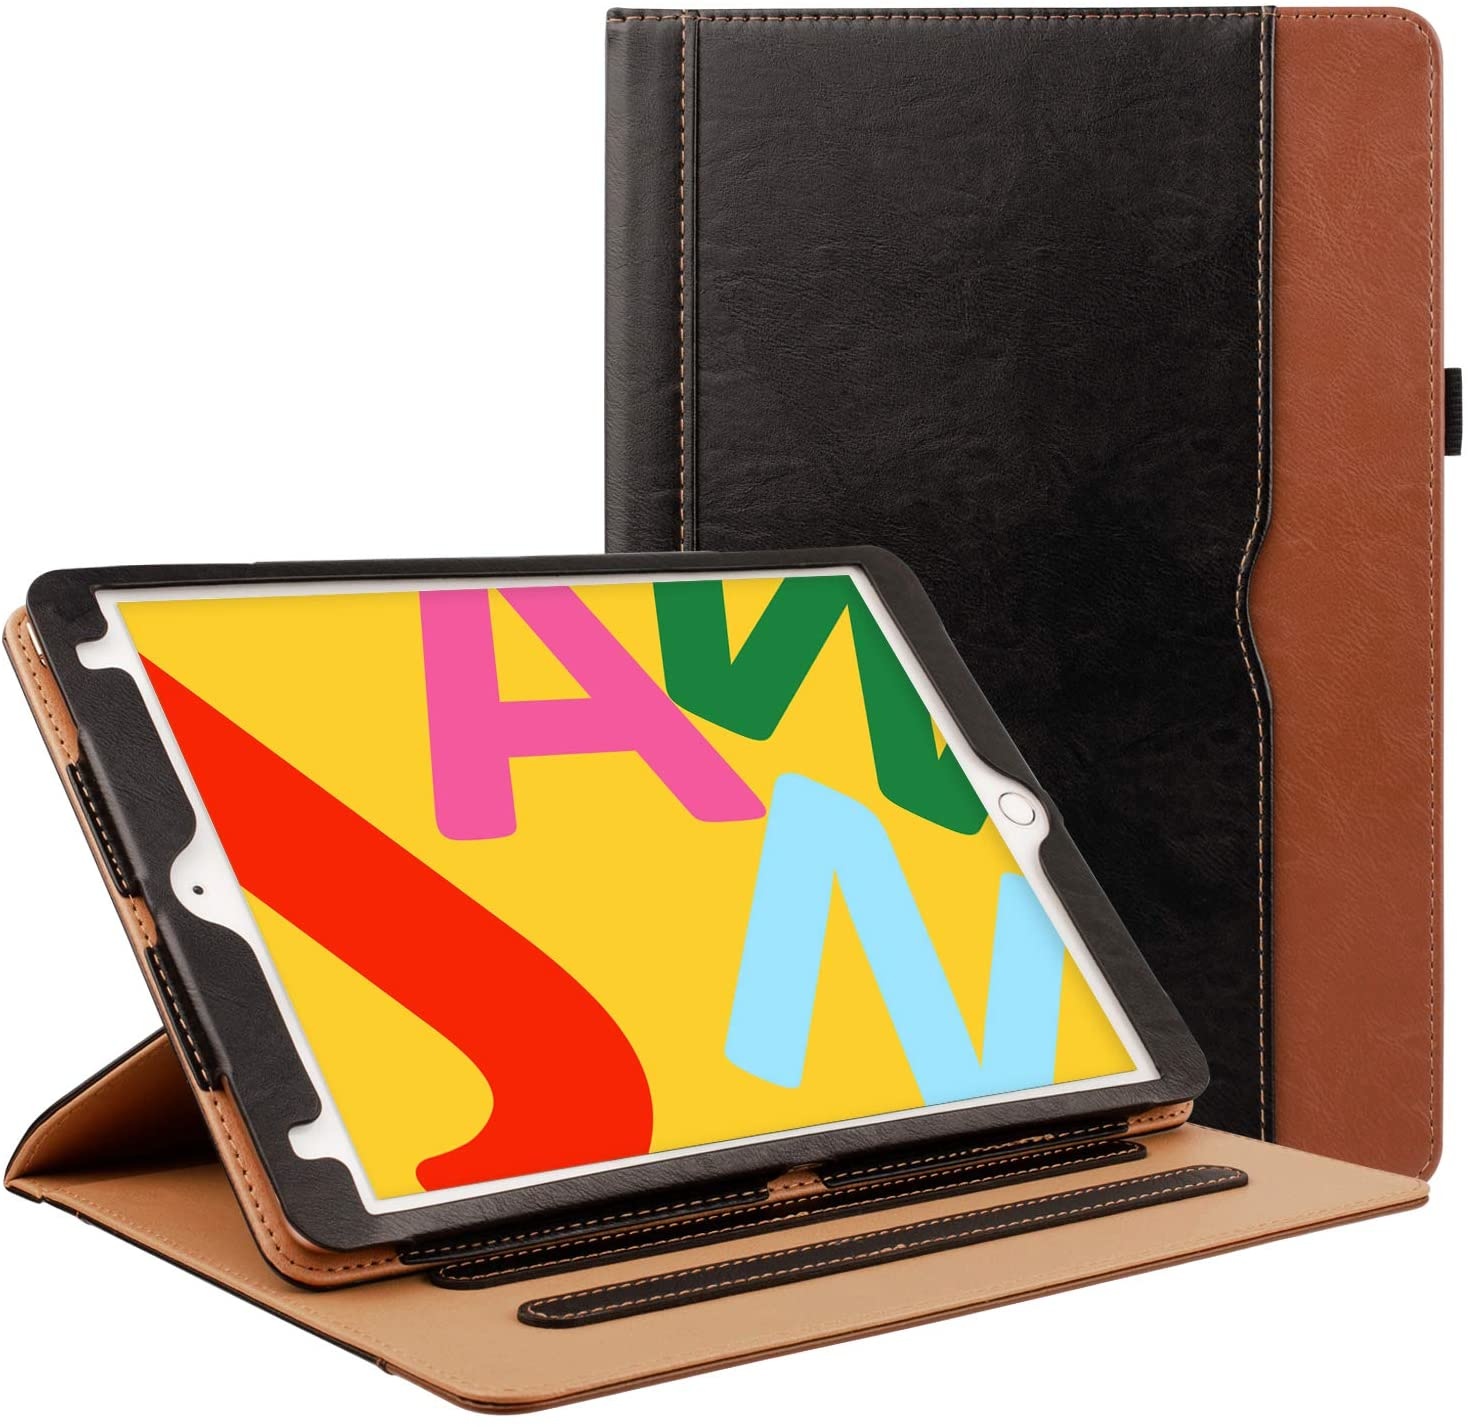 Absorberen beu Ontwapening iPad Mini 5 luxe hoes leer bruin zwart - Gratis Verzending - iPadspullekes